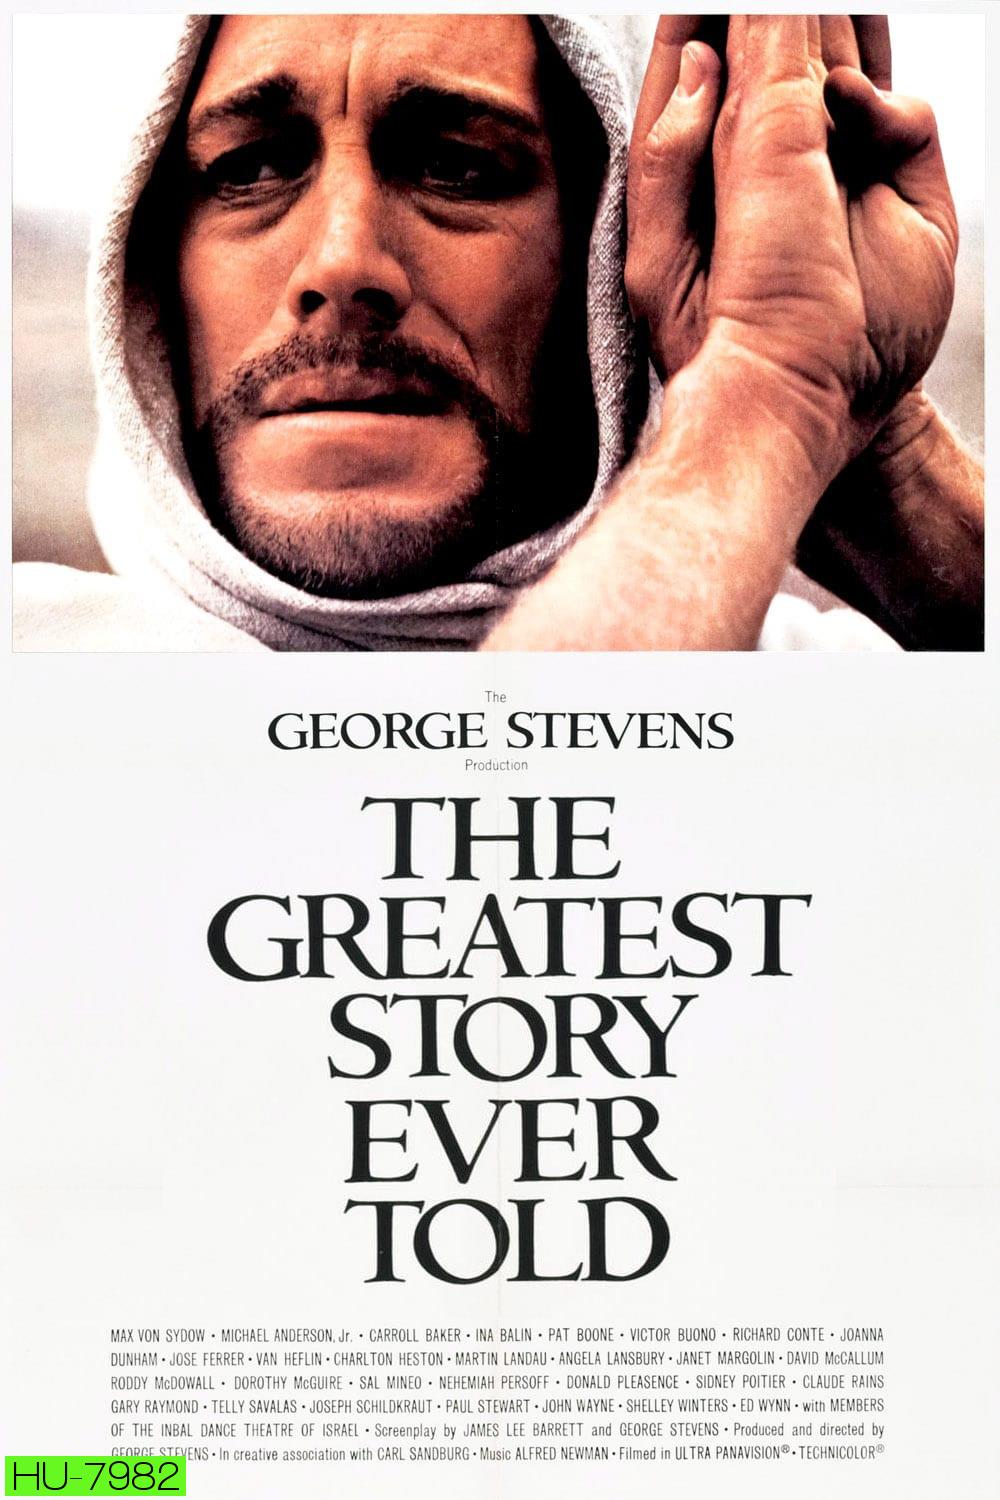 เรื่องราวชีวประวัติของพระเยซูคริสต์ The Greatest Story Ever Told (1965)